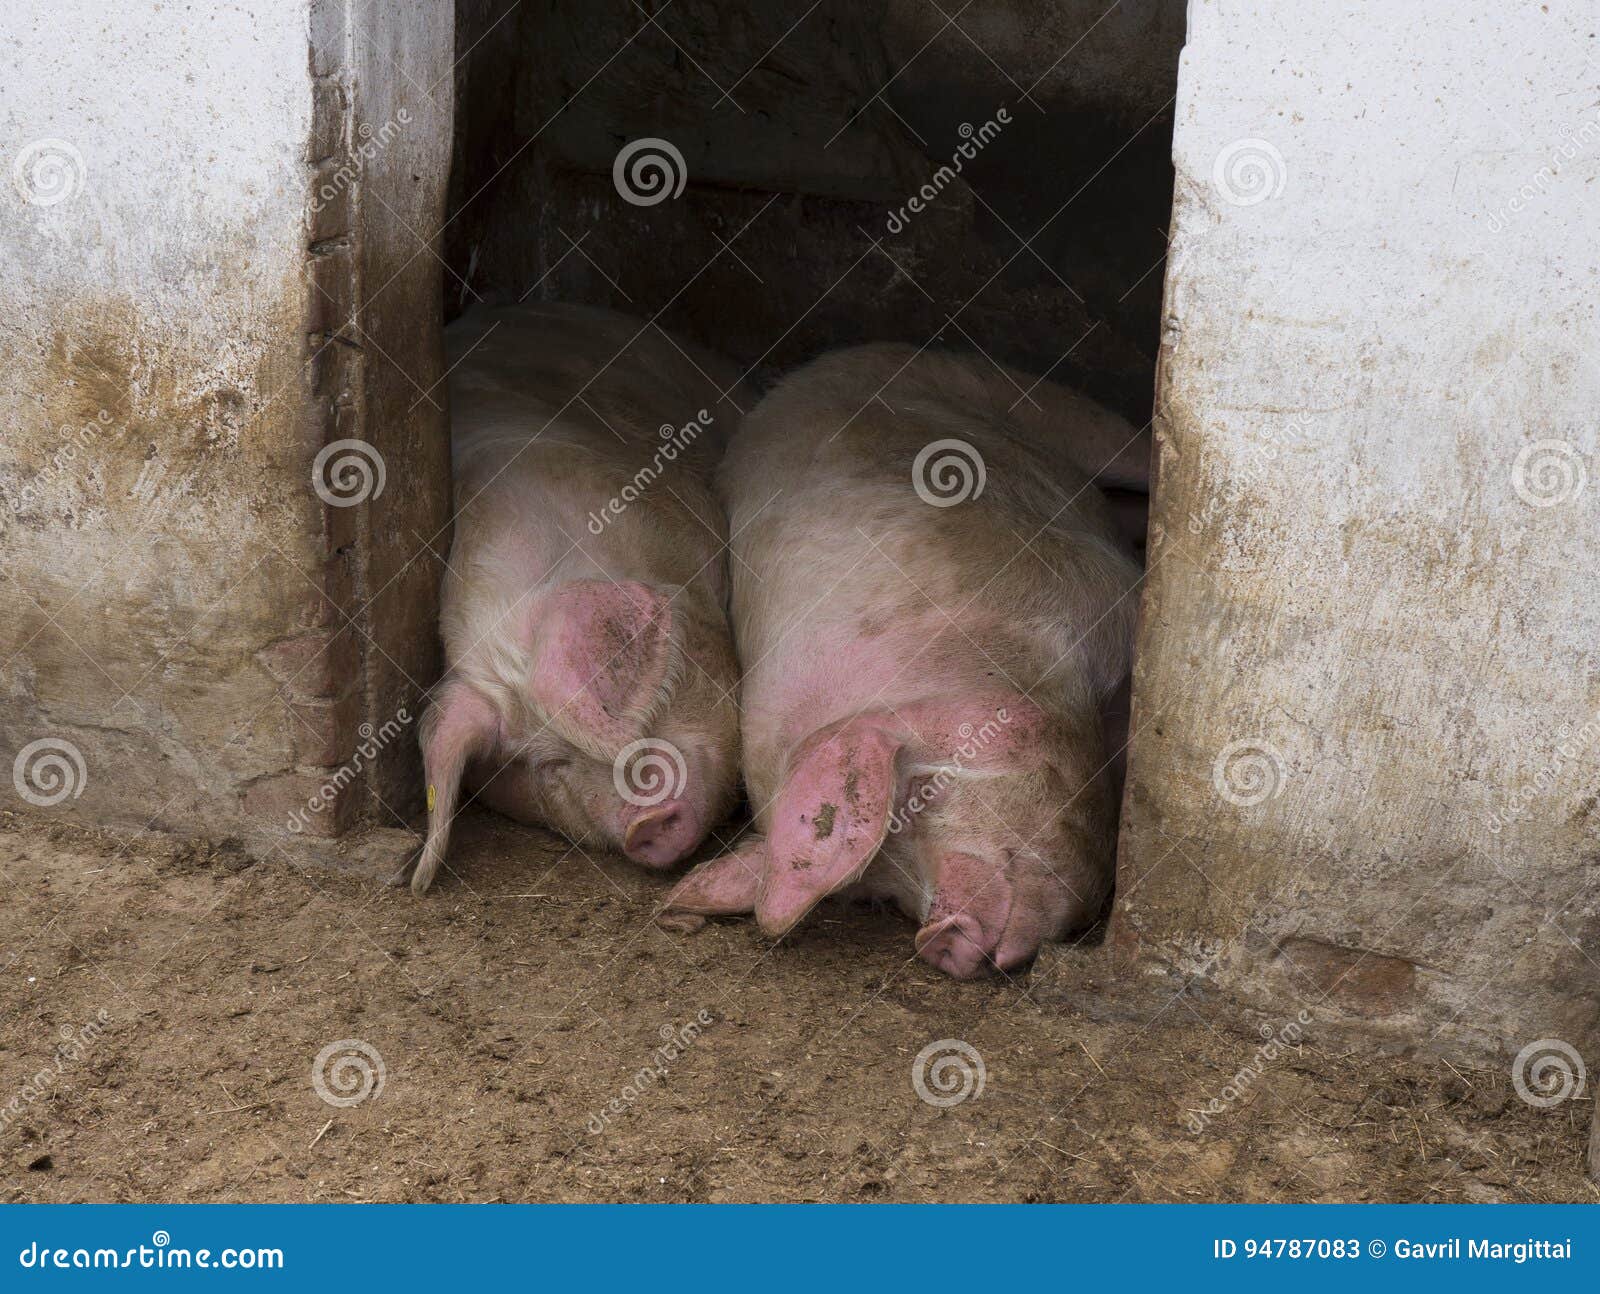 13 свиней. Две хрюшки спят. Два спящих поросенка. Спящий поросенок. Две сонные свиньи.